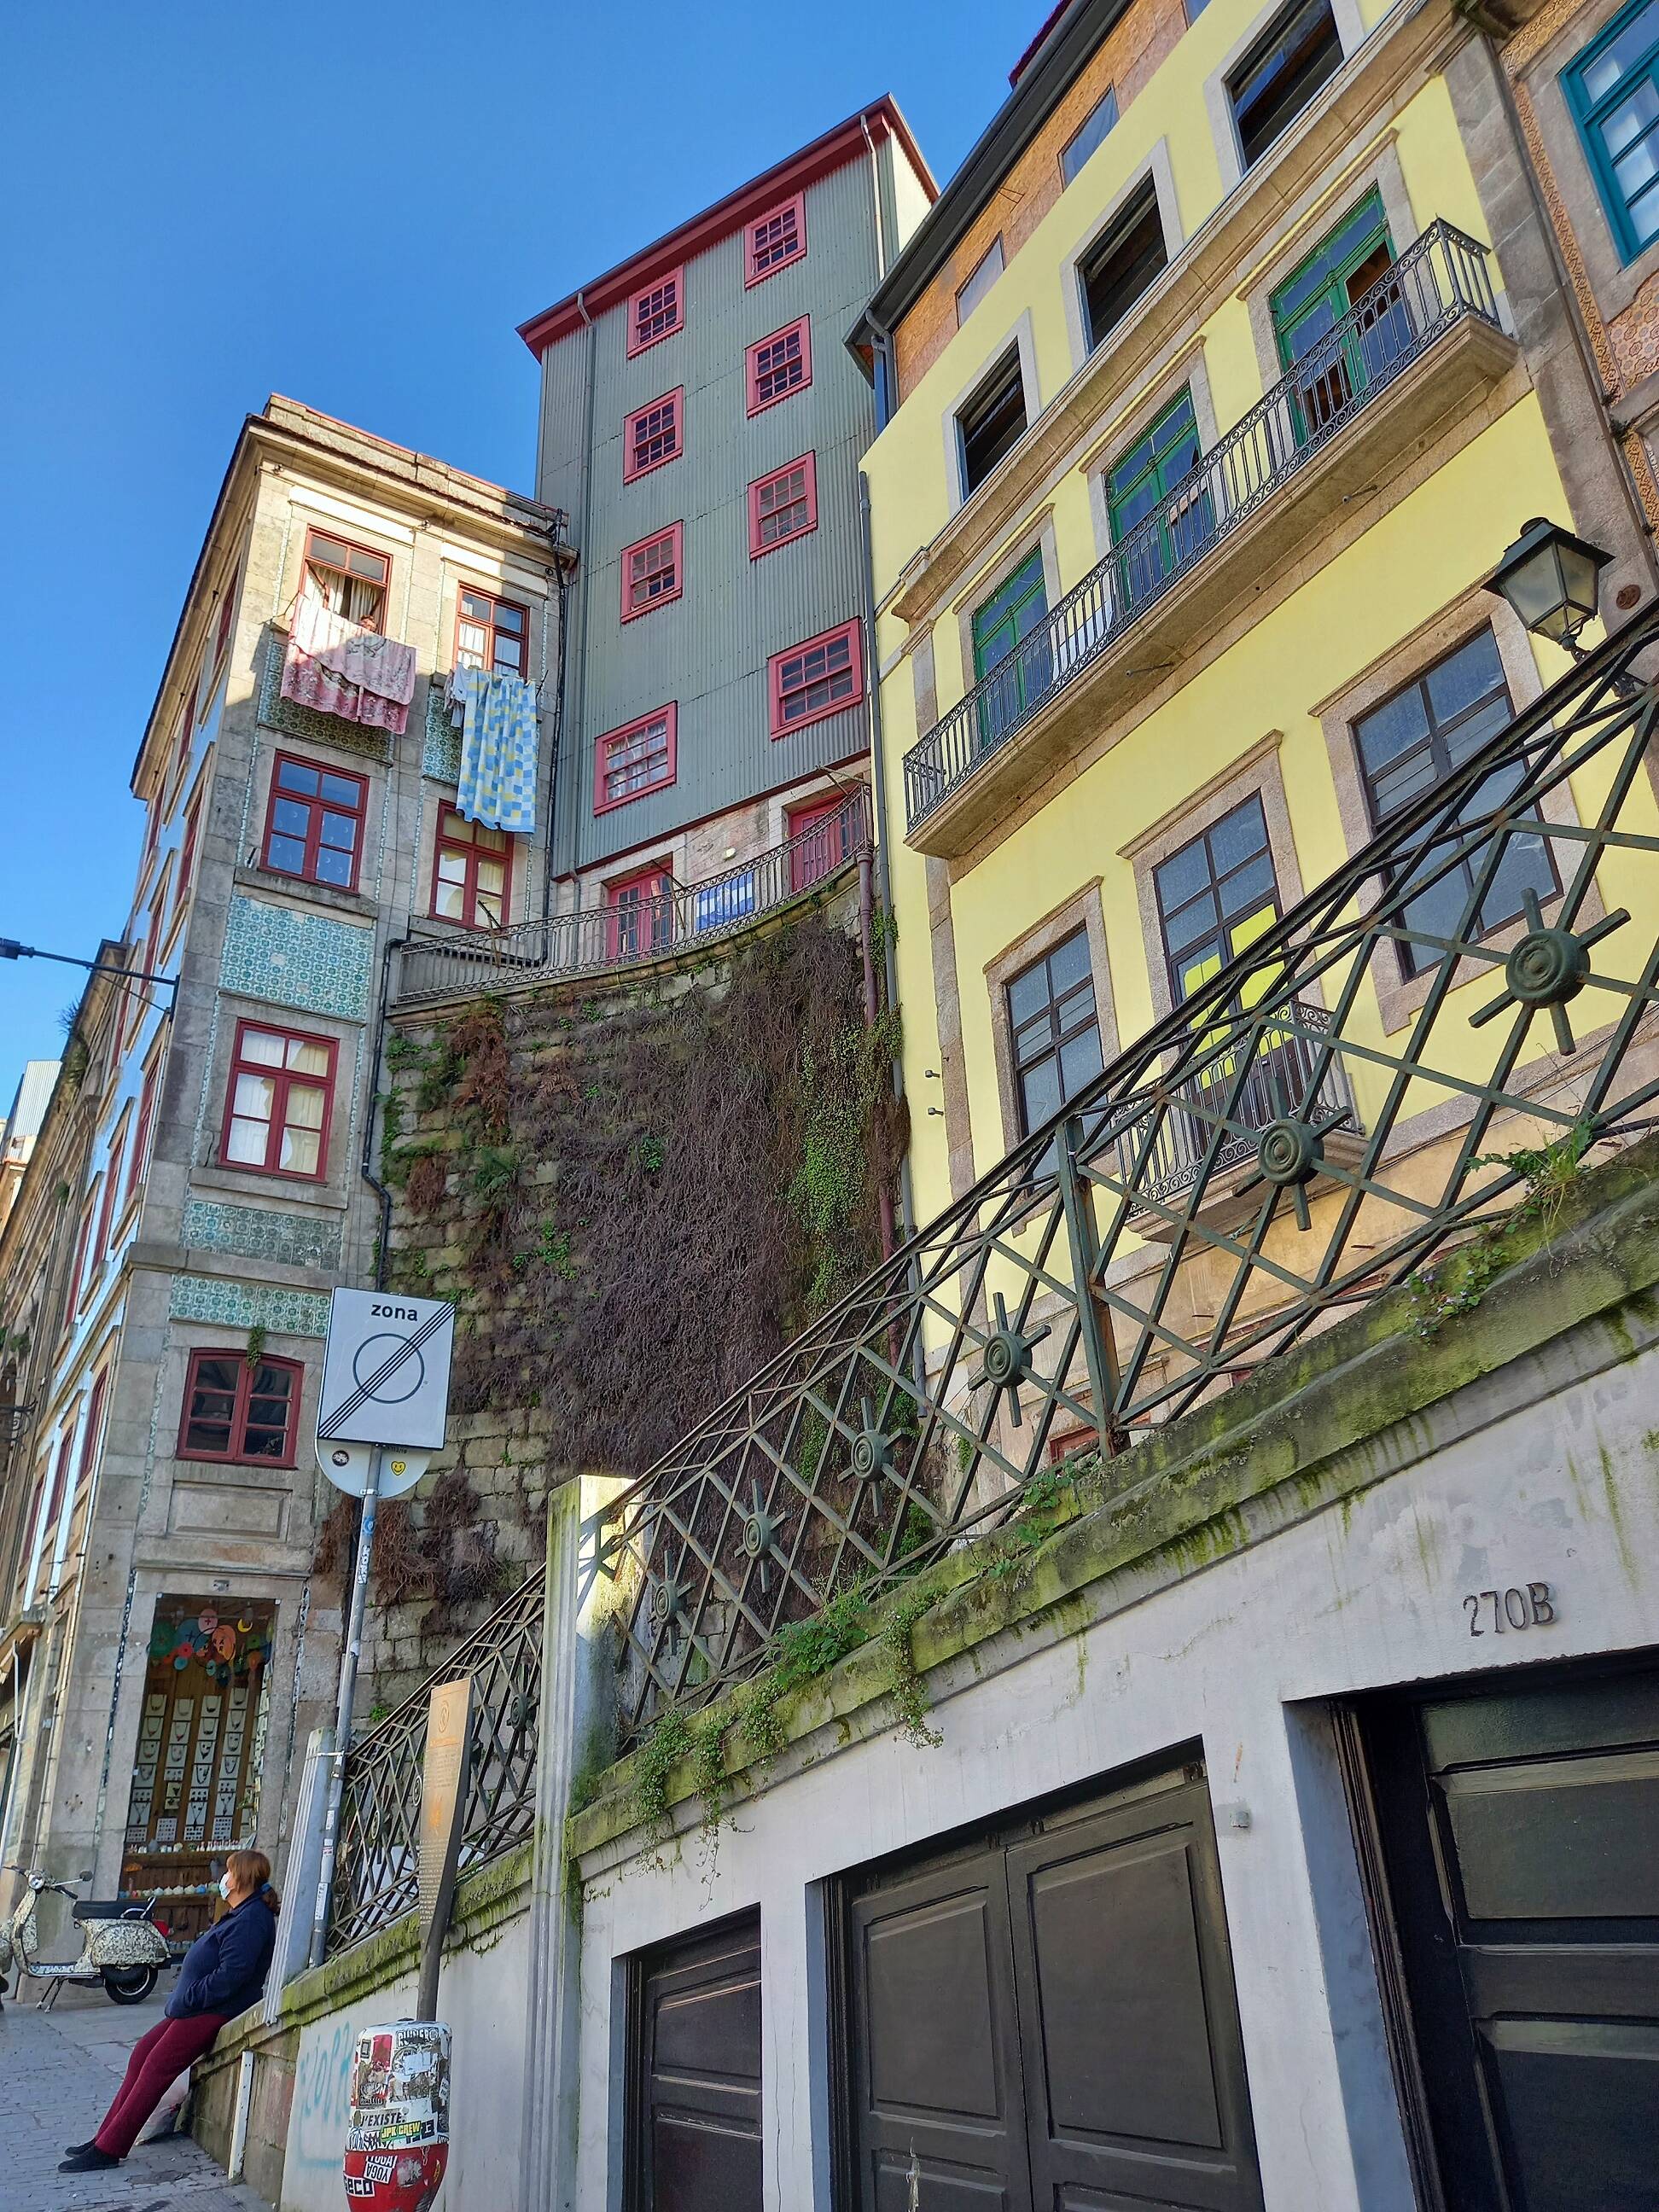 Ruas do centro histórico de Porto, em Portugal. Foto: Camila Cetrone